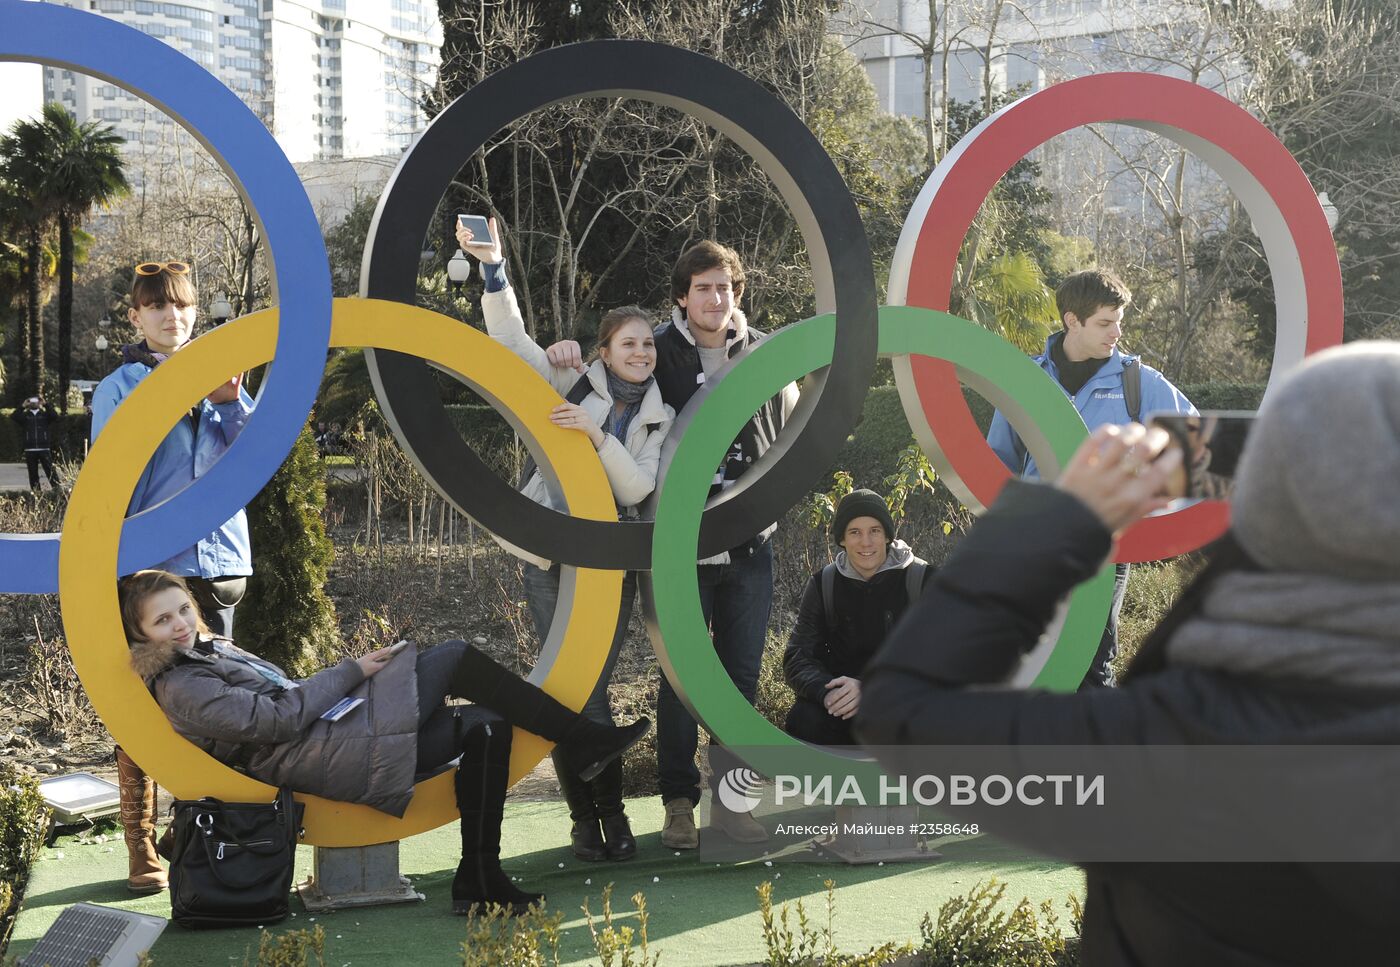 Олимпийские игры в Сочи. 1 день до старта